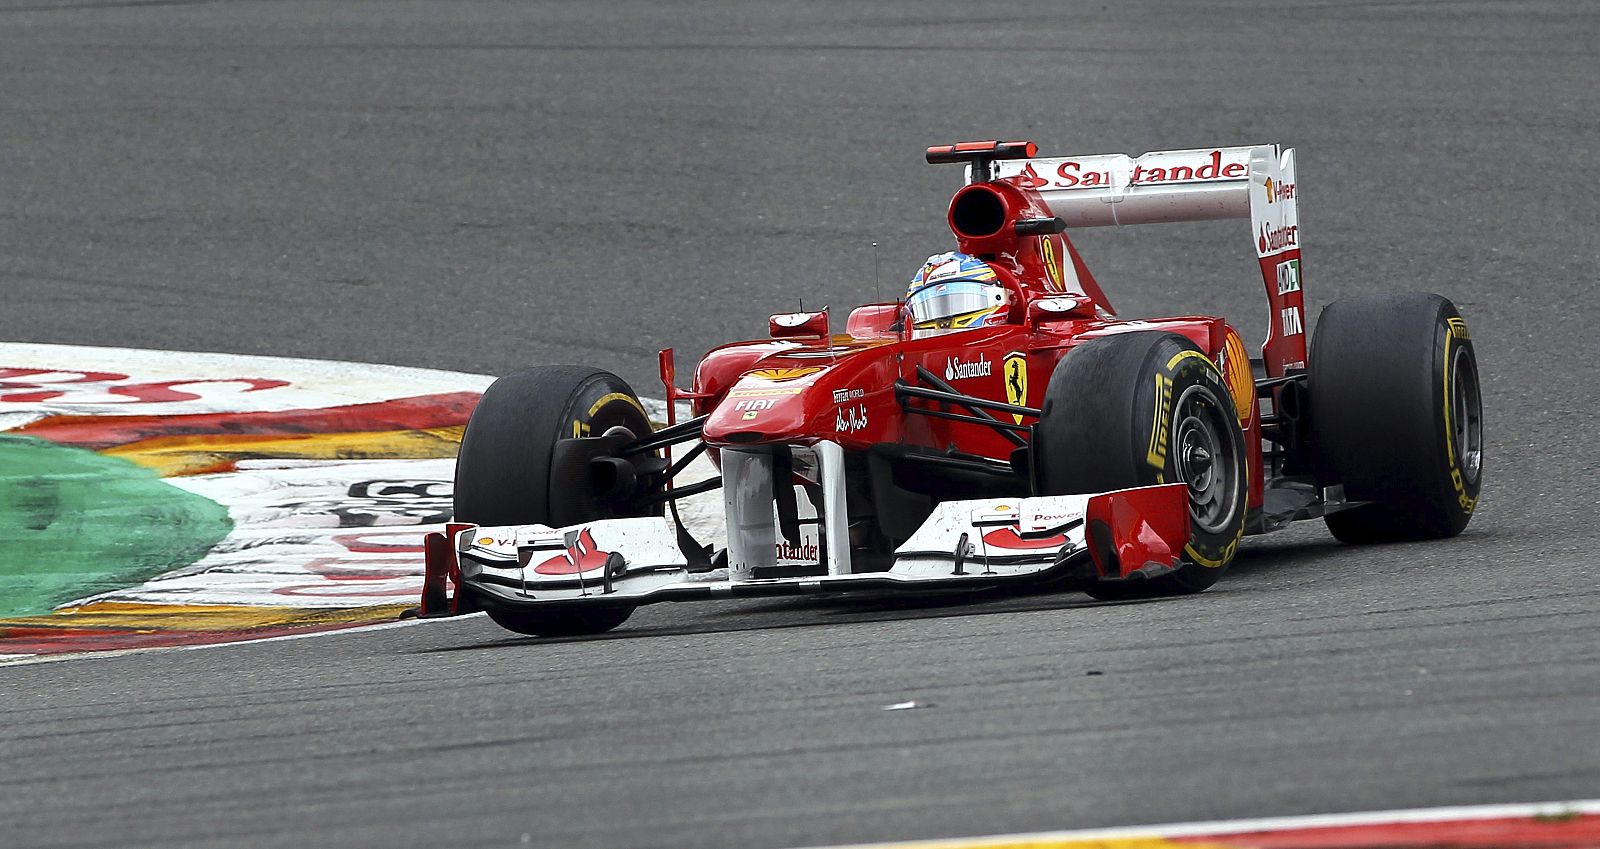 El piloto español Fernando Alonso, de Ferrari, conduce su monoplaza durante el Gran Premio de Bélgica